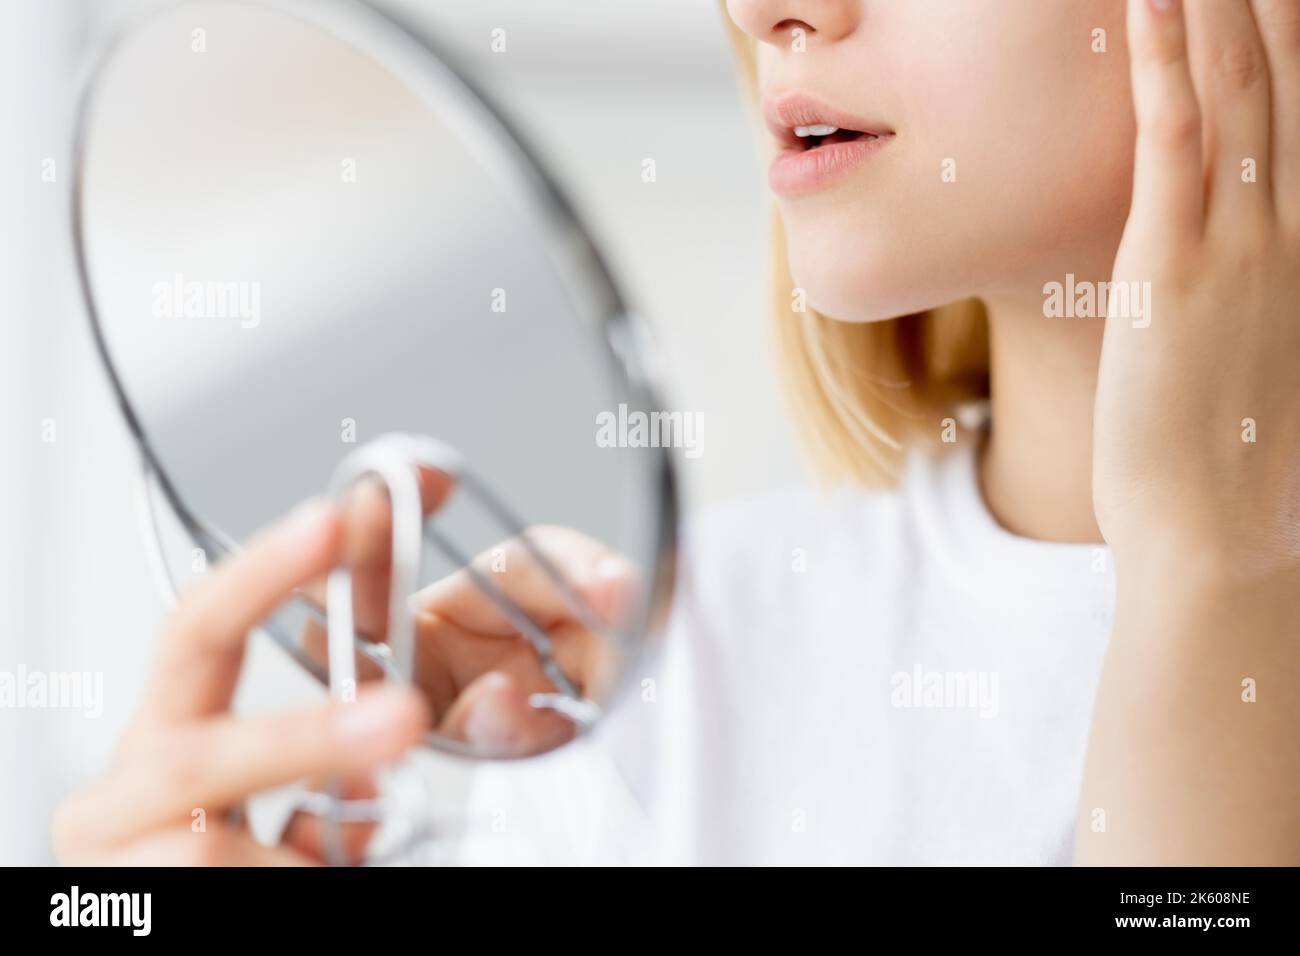 soins de beauté peau dermatologie femme miroir de visage Banque D'Images